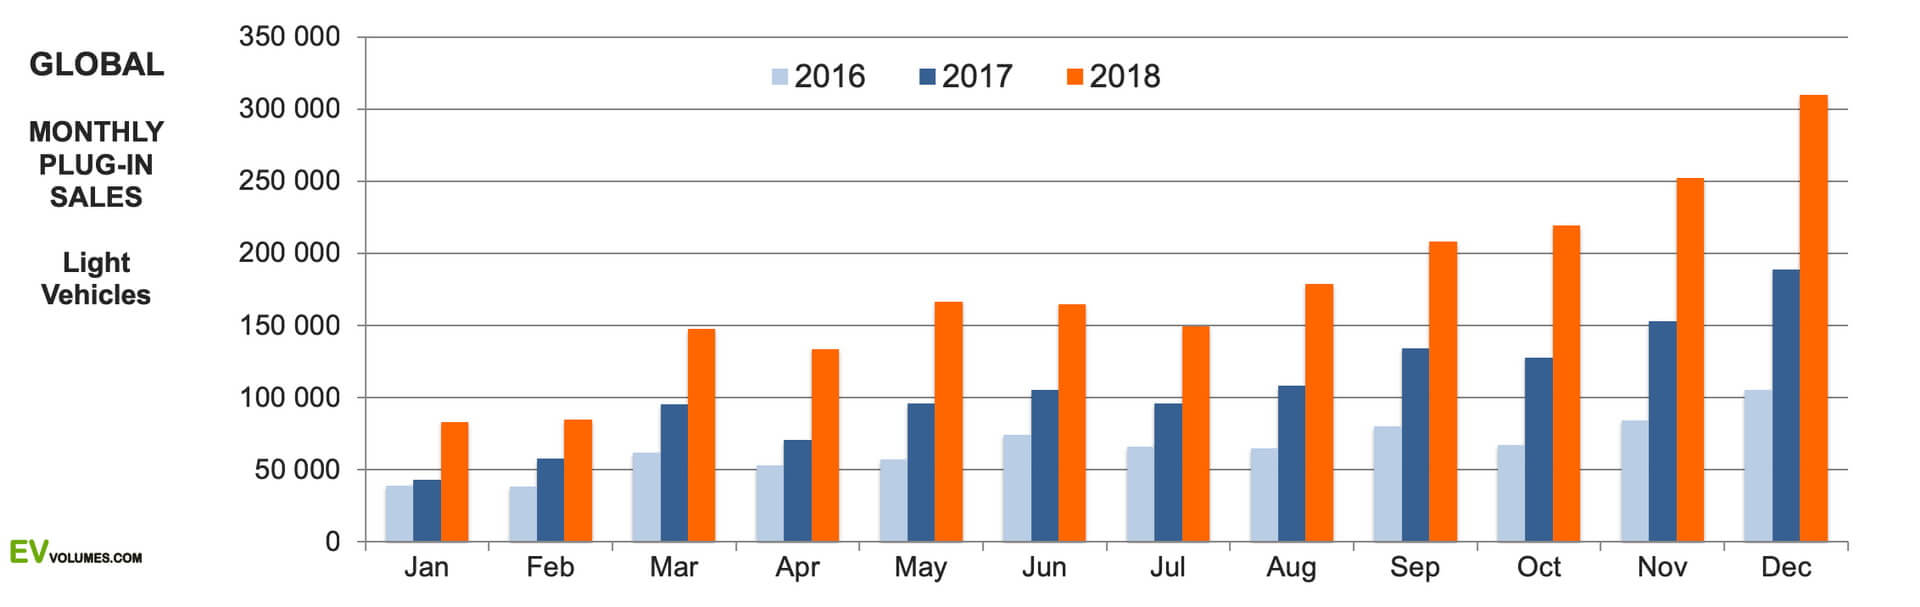 Глобальные ежемесячные продажи электромобилей и плагин-гибридов в 2016-2018 годах